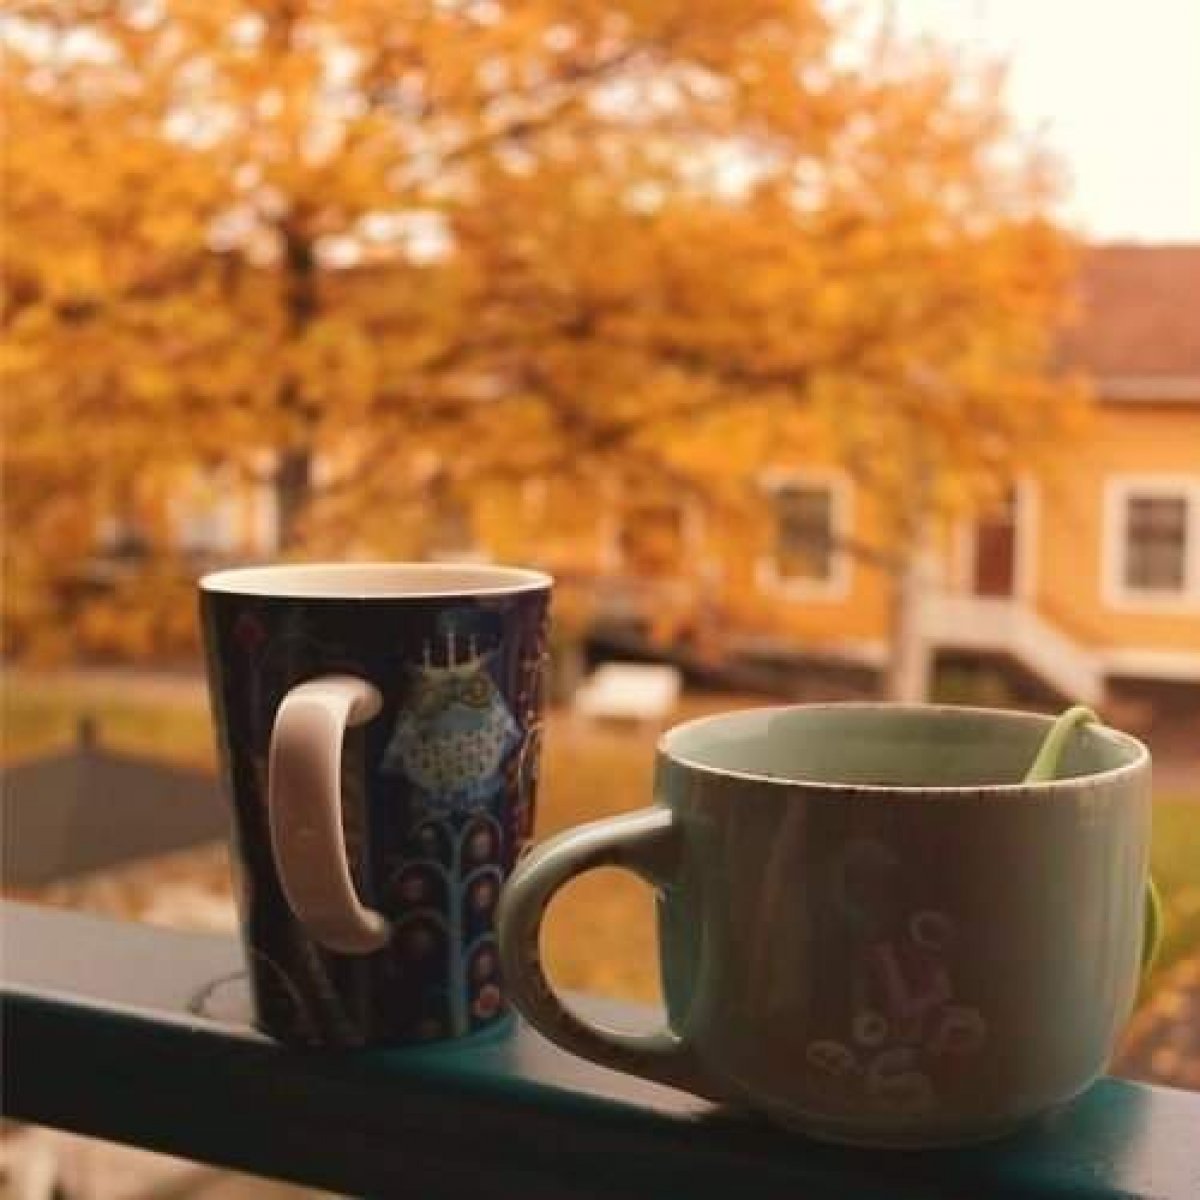 Хорошего настроения в это осеннее утро! Первая суббота октября - чем не повод придумать что-нибудь необычное, чтобы она запомнилась?